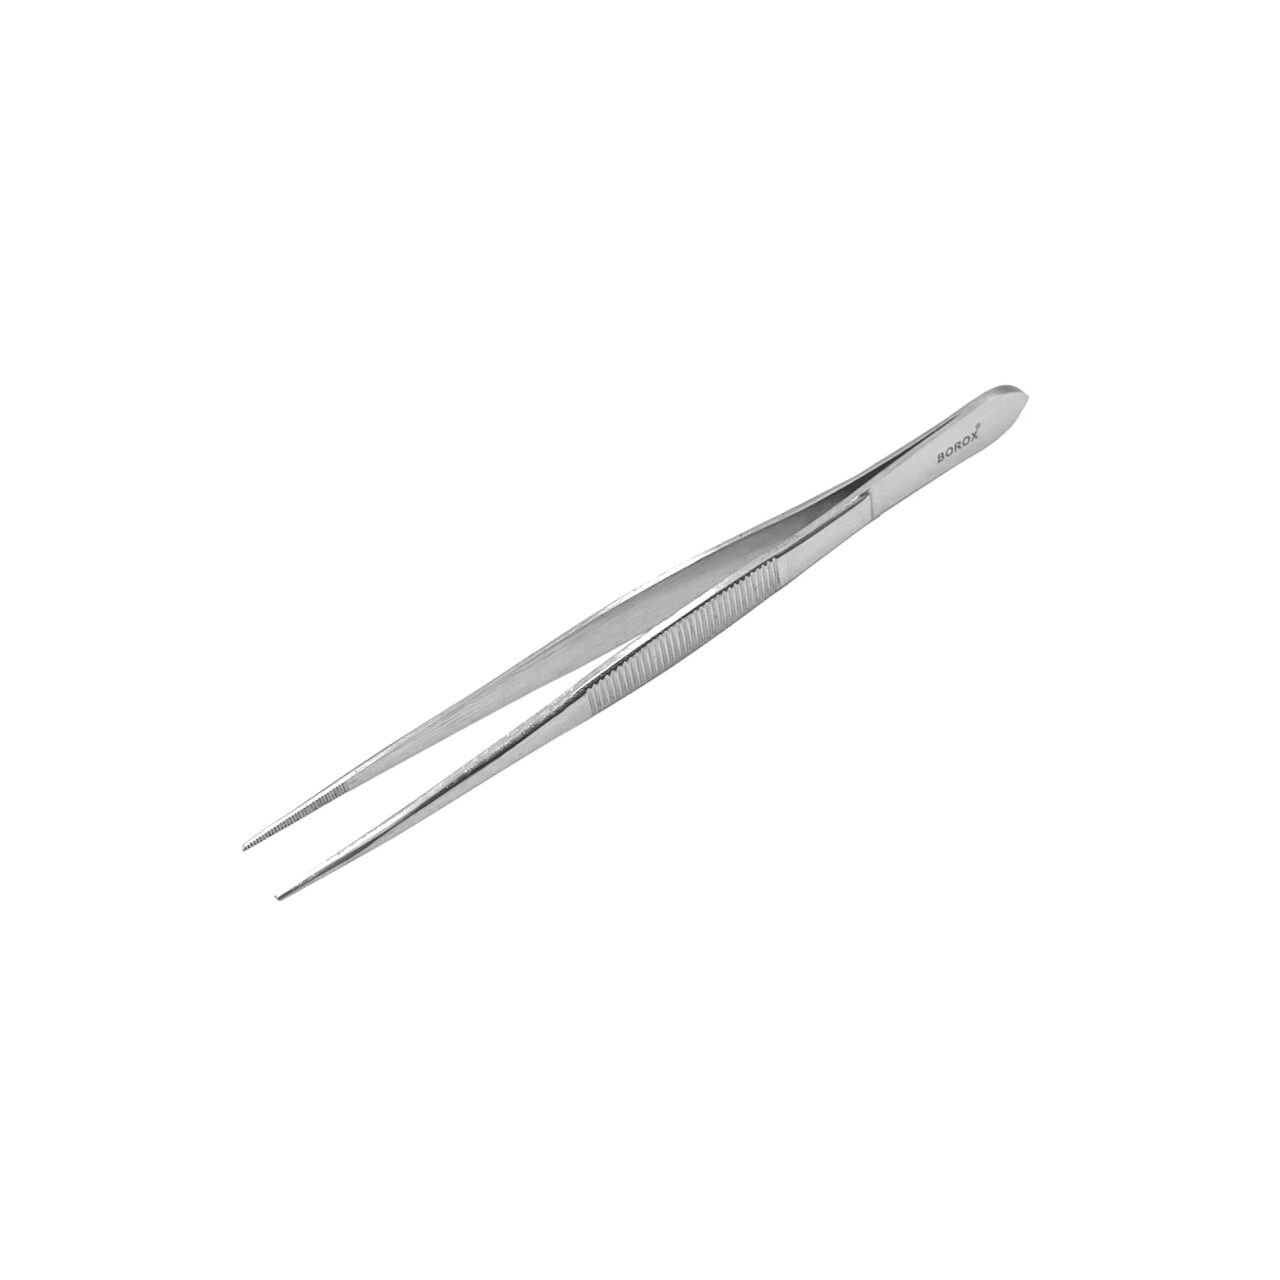 Borox Penset 16 cm Paslanmaz Çelik - Sivri Uç Dişli Cımbız